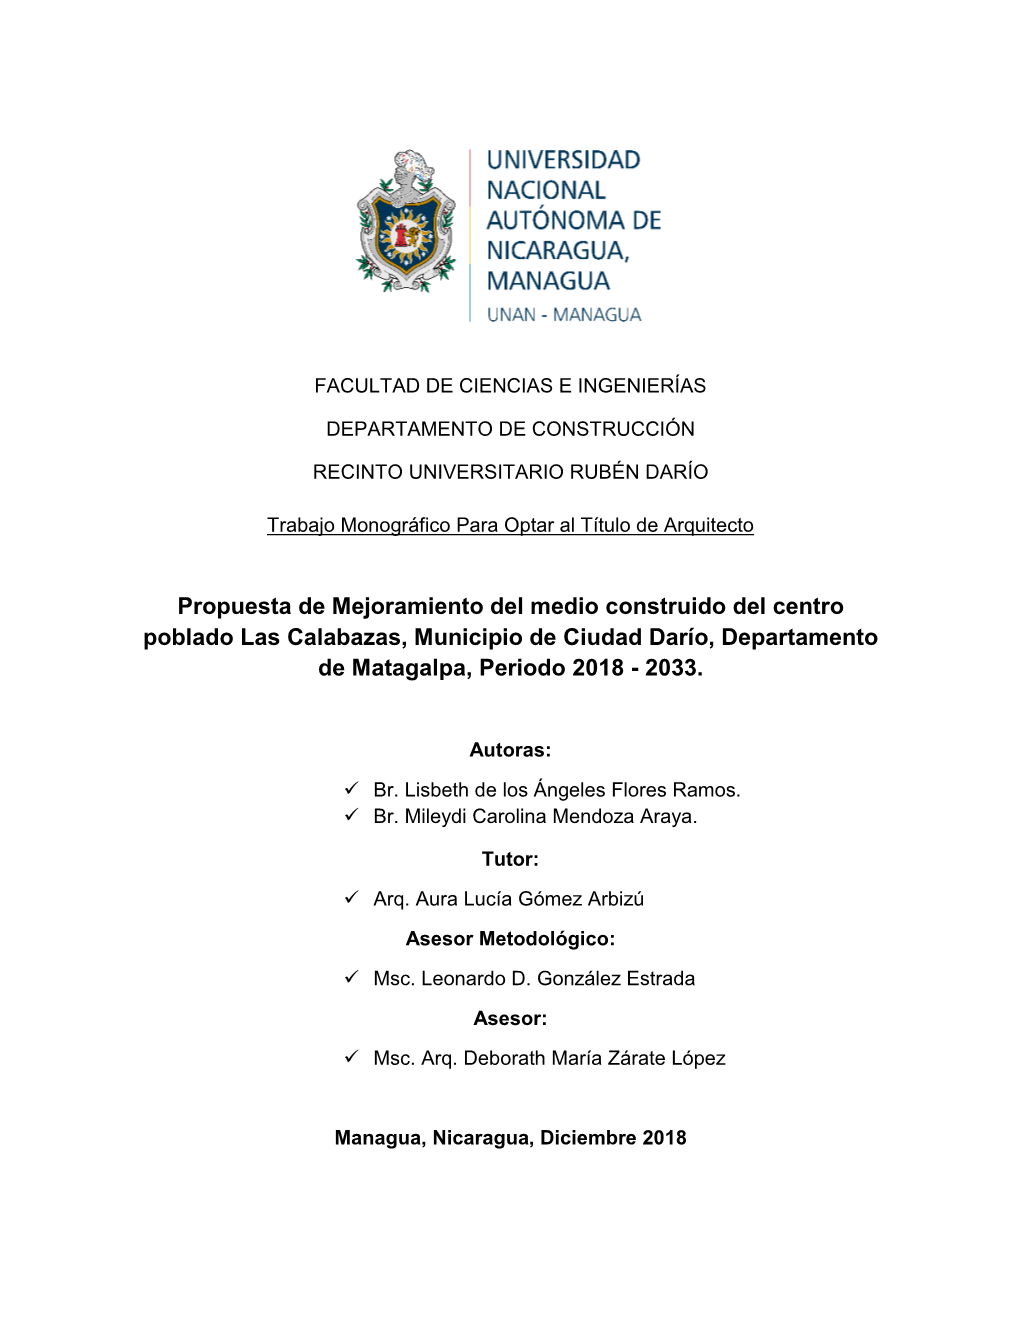 Propuesta De Mejoramiento Del Medio Construido Del Centro Poblado Las Calabazas, Municipio De Ciudad Darío, Departamento De Matagalpa, Periodo 2018 - 2033